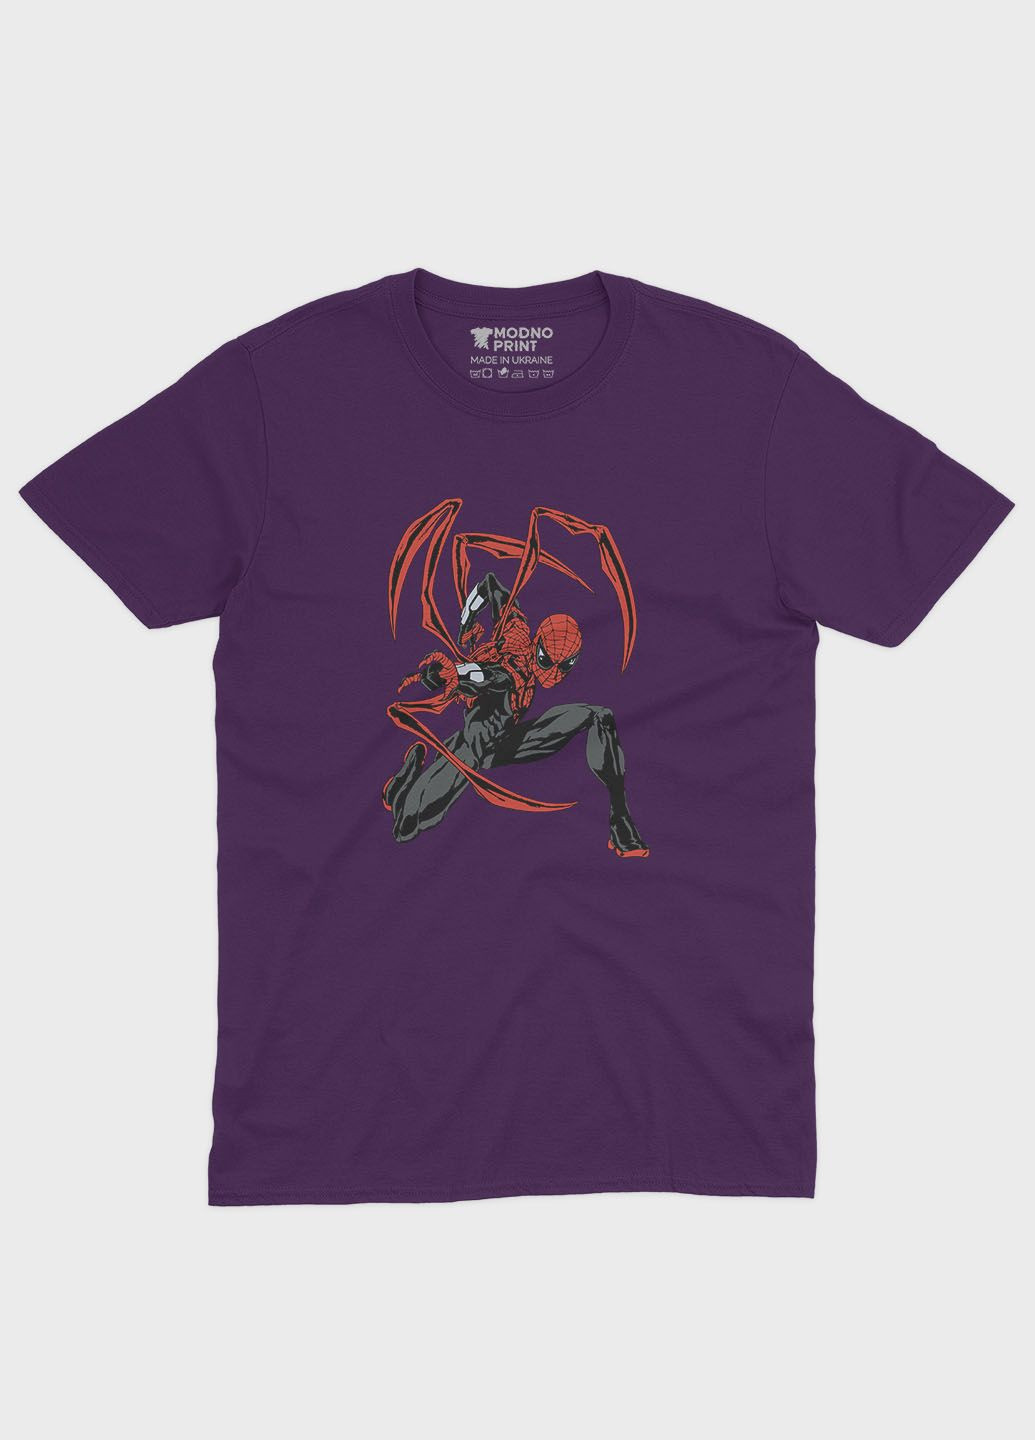 Фиолетовая демисезонная футболка для мальчика с принтом супергероя - человек-паук (ts001-1-dby-006-014-115-b) Modno